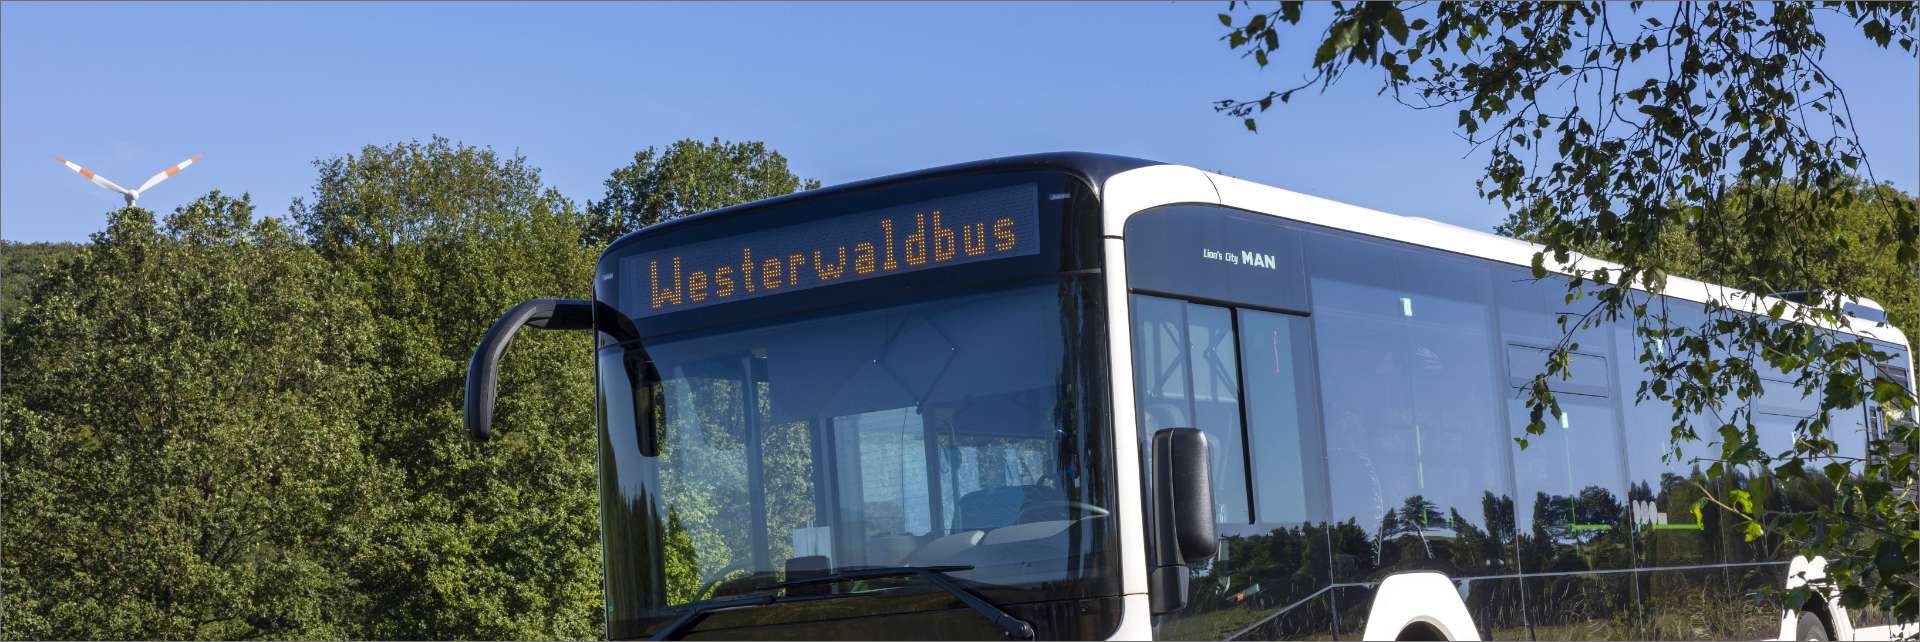 Westerwaldbus